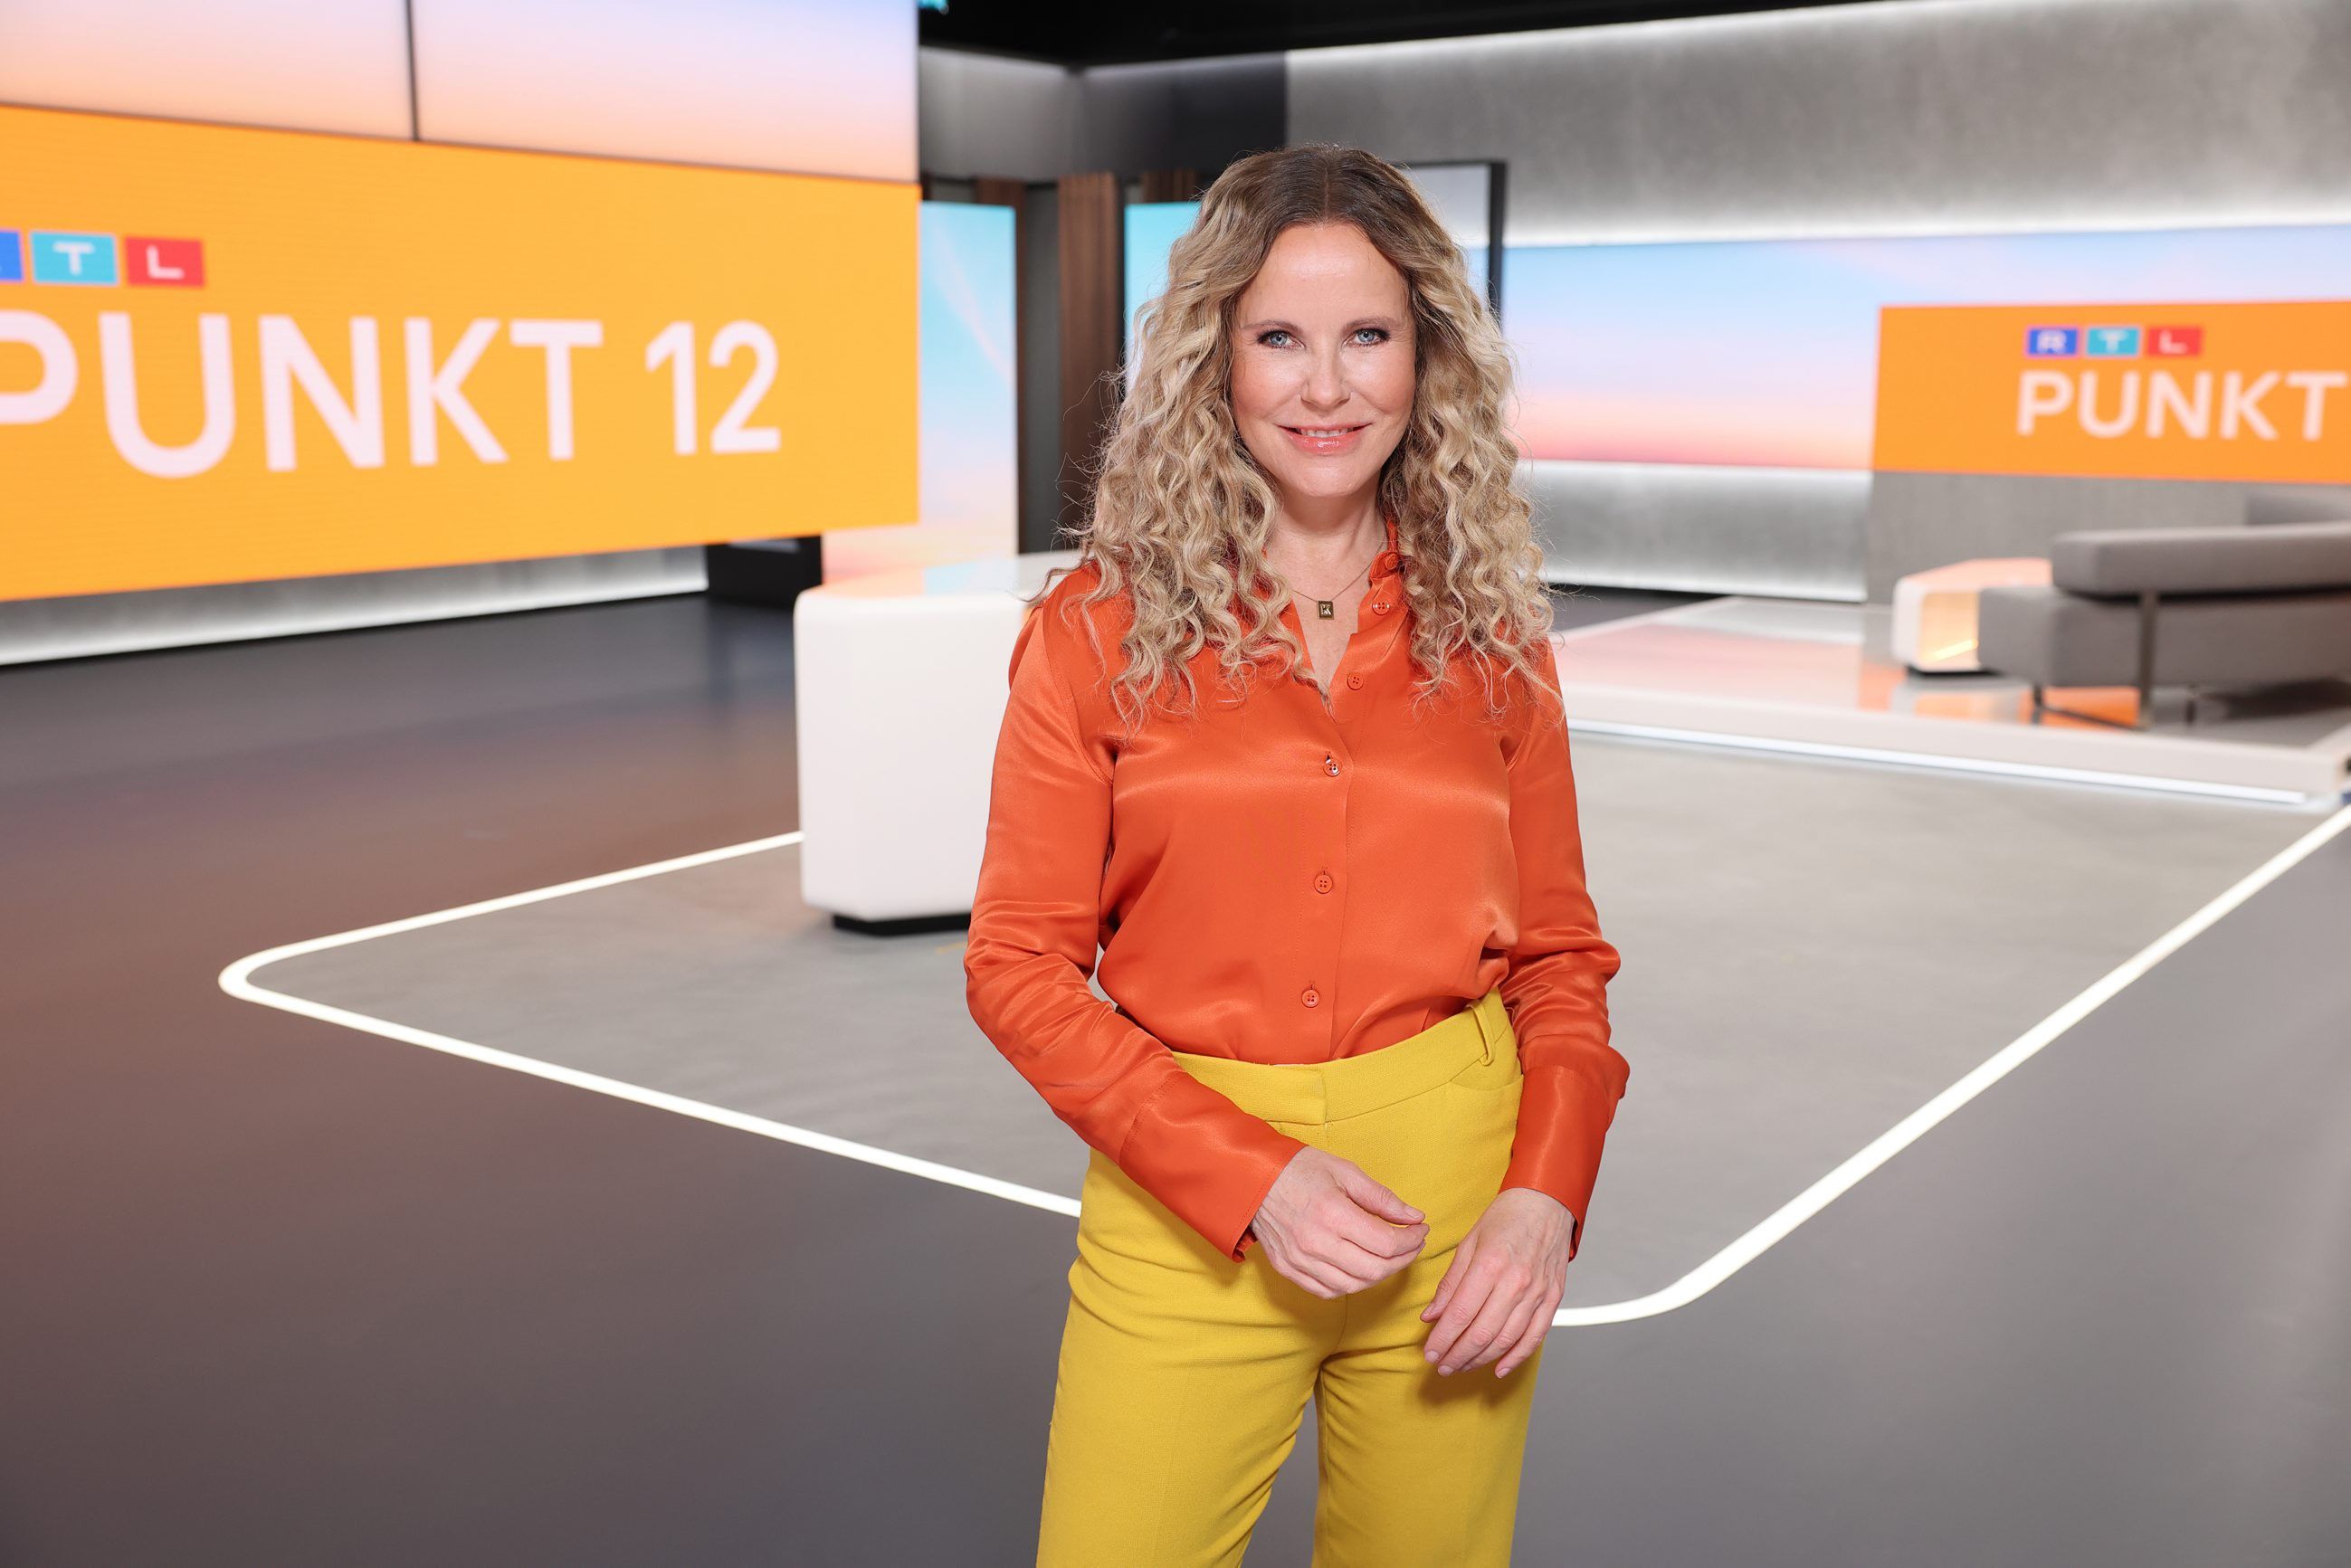 CapeRock herontwerpt nieuwsprogramma's van RTL Duitsland